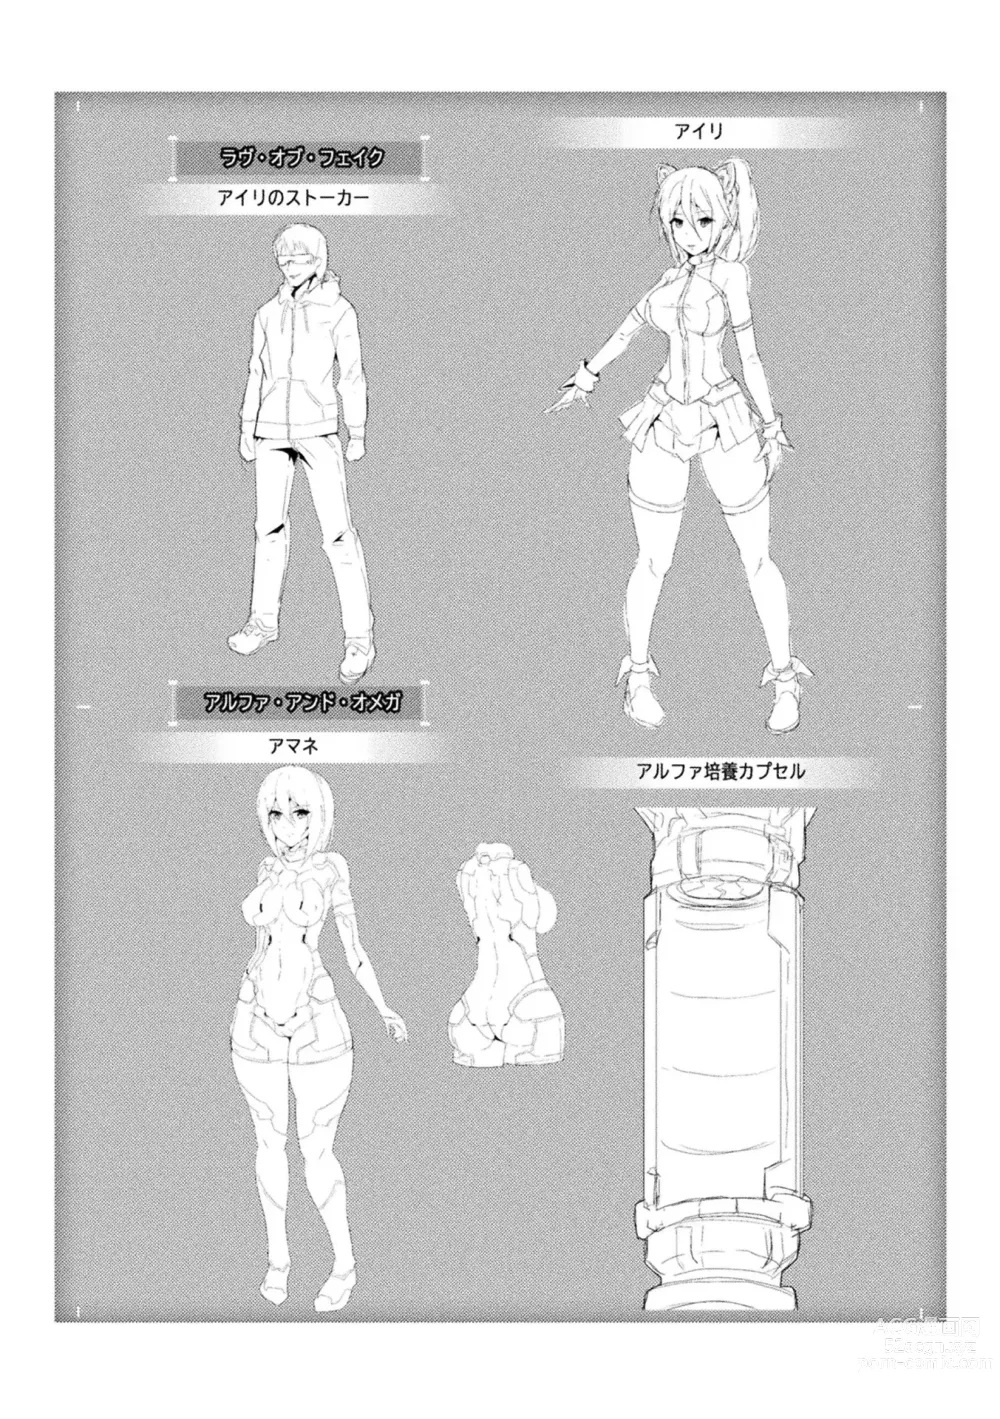 Page 184 of manga Picchiri Suit Psychology